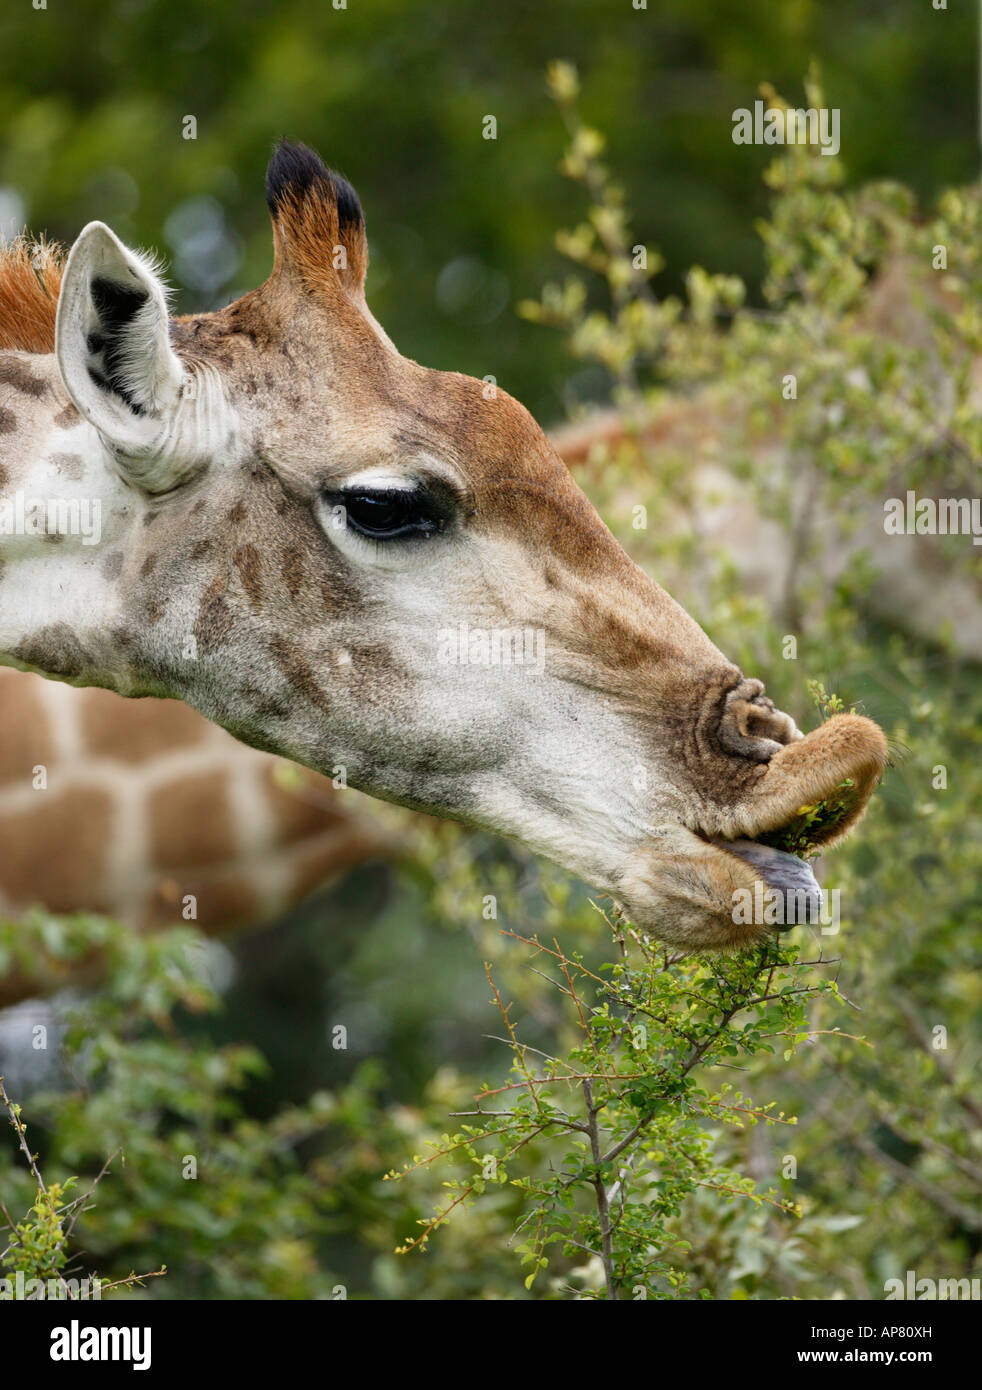 Primo piano di una giraffa con orlo arrotolato con la sua linguetta da tirare una diramazione verso la sua bocca mentre si alimenta su un arbusto Foto Stock